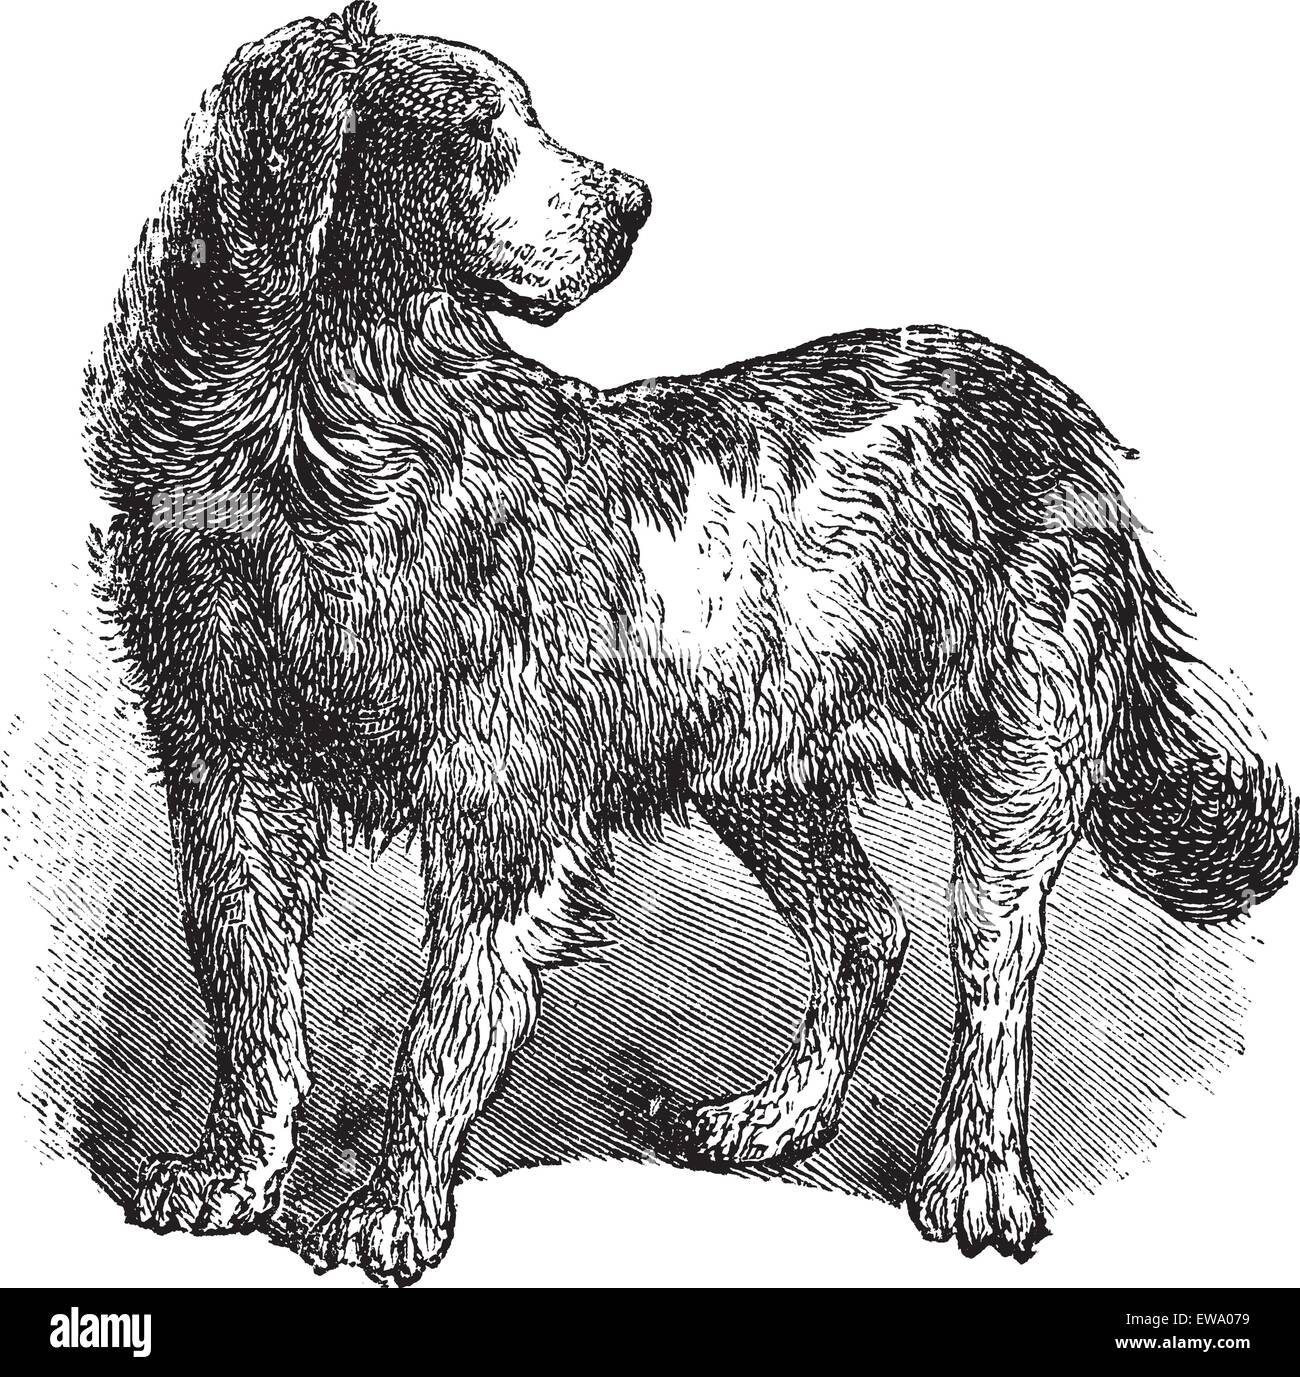 Terre-neuve ou Canis lupus familiaris, gravure d'époque. Ancien gravé illustration d'un Terre-neuve. Illustration de Vecteur